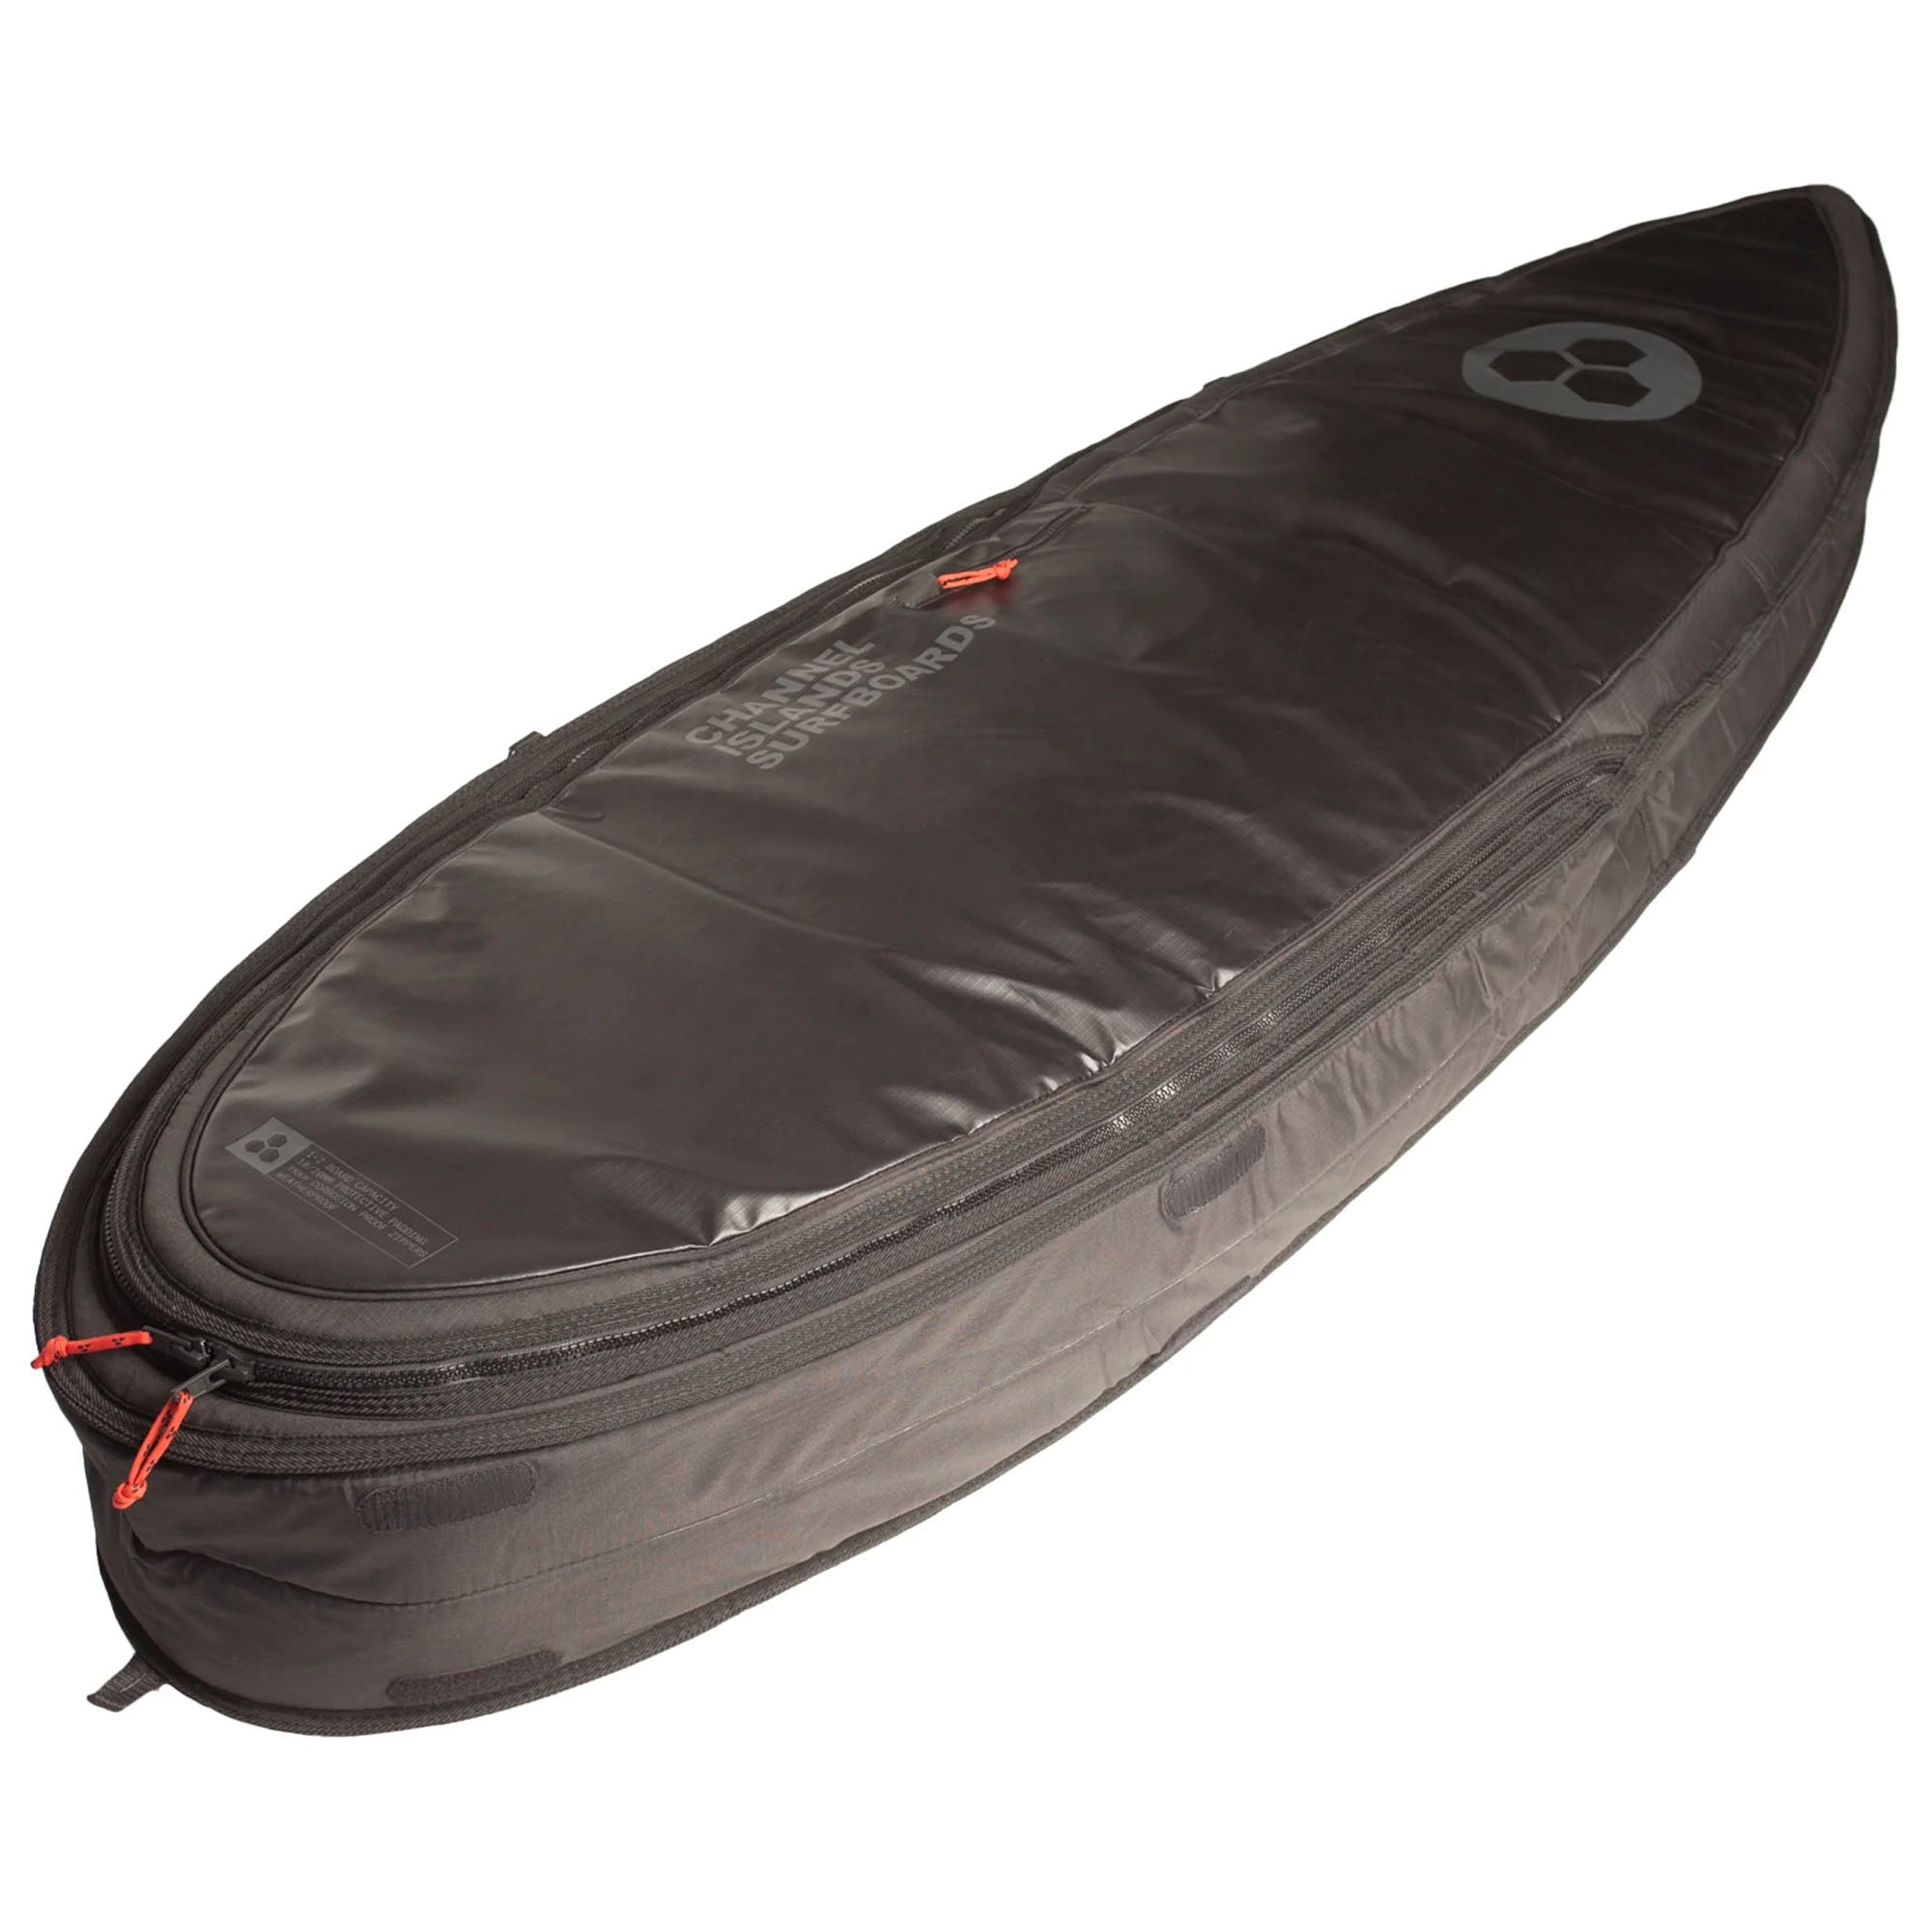 Channel Islands Traveler Single/Double Shortboard Surfboard Bag